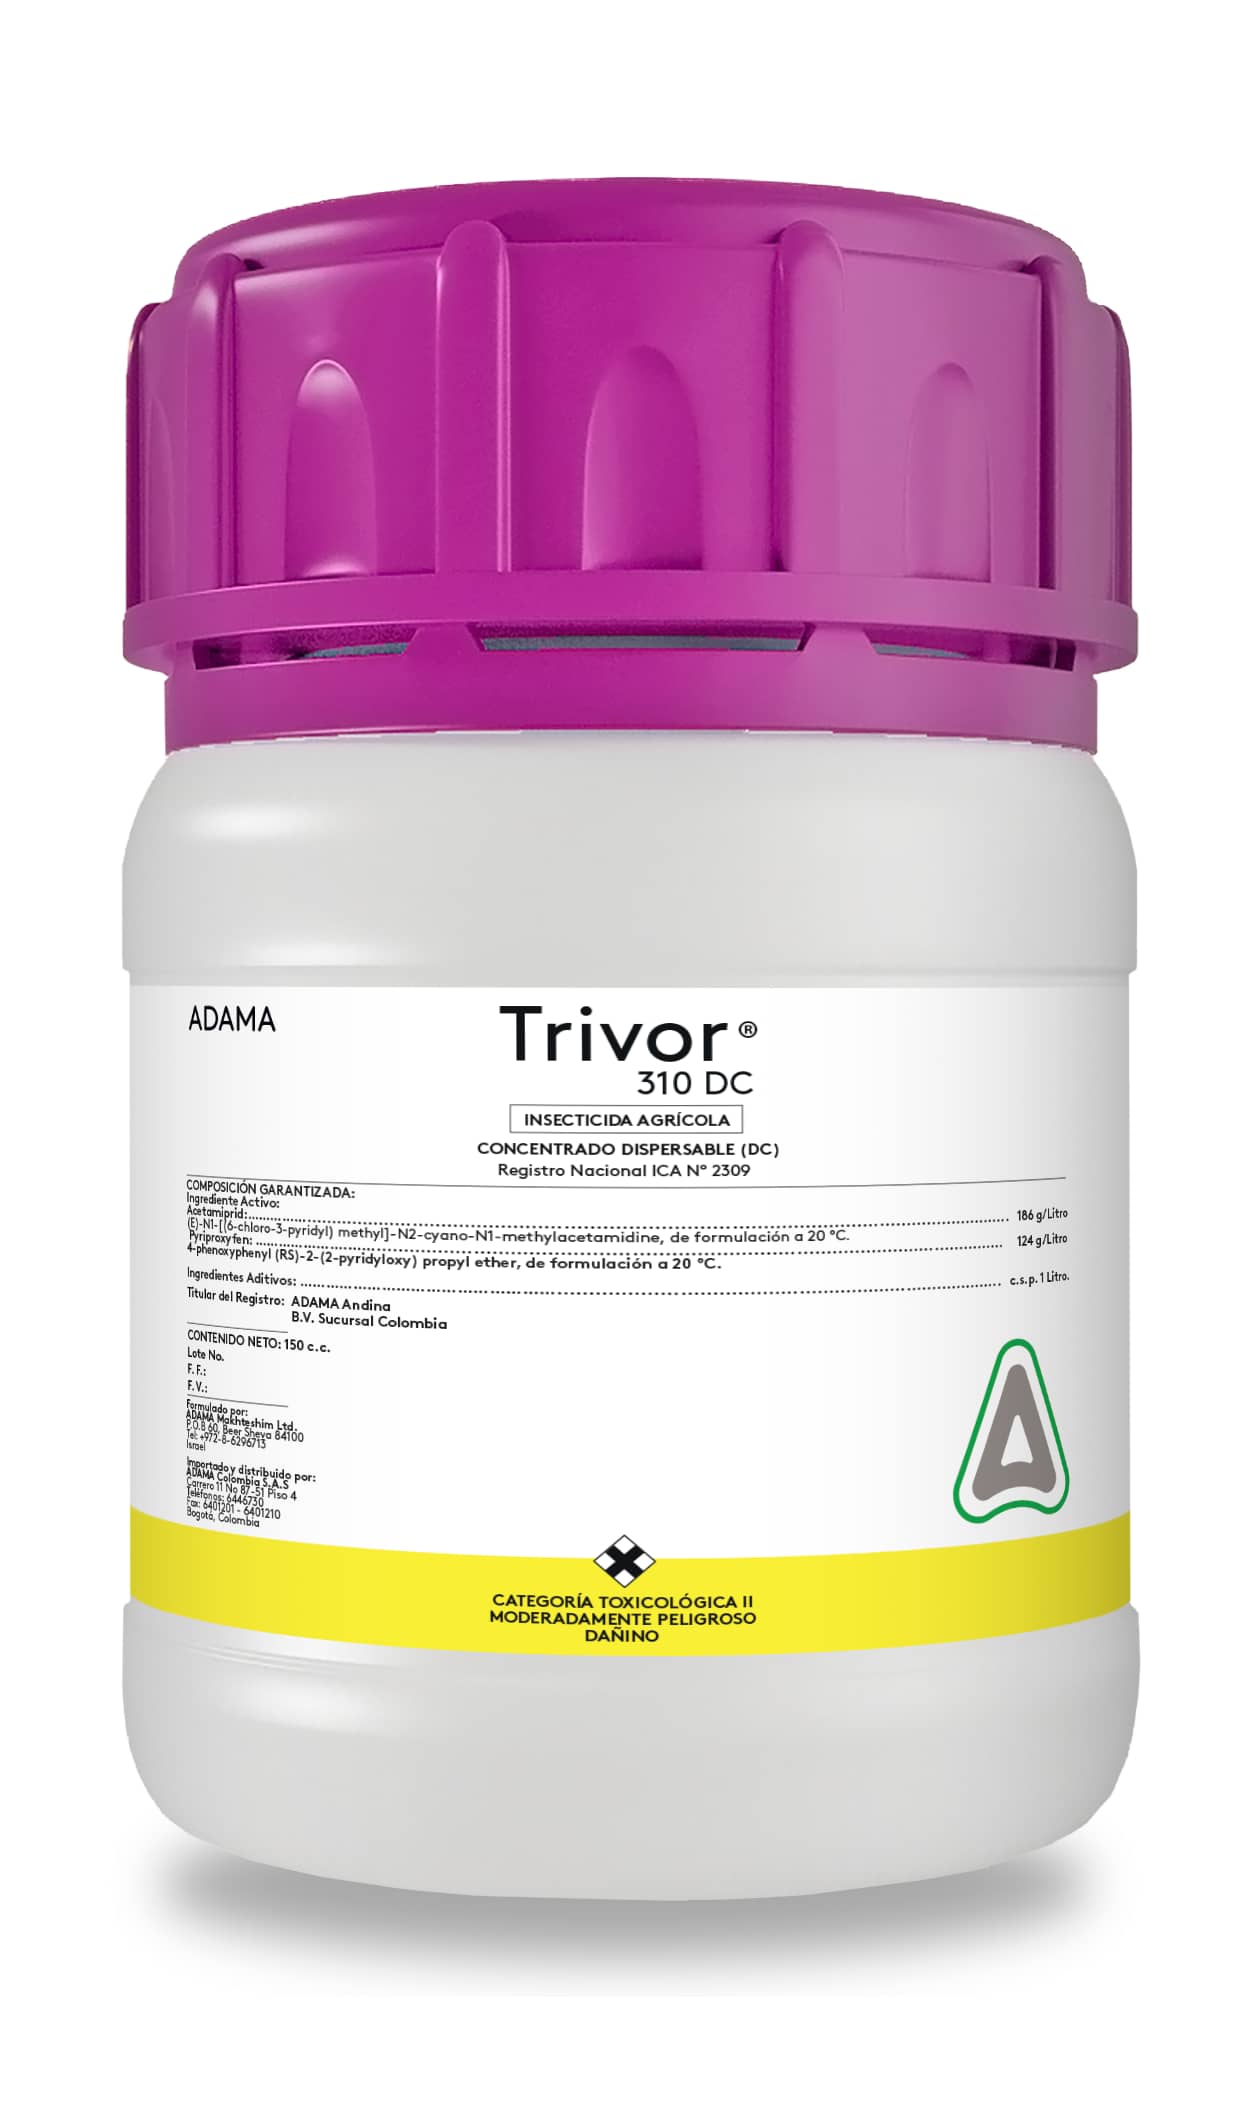 Insecticida Trivor® 310 DC x 150 cc - Adama